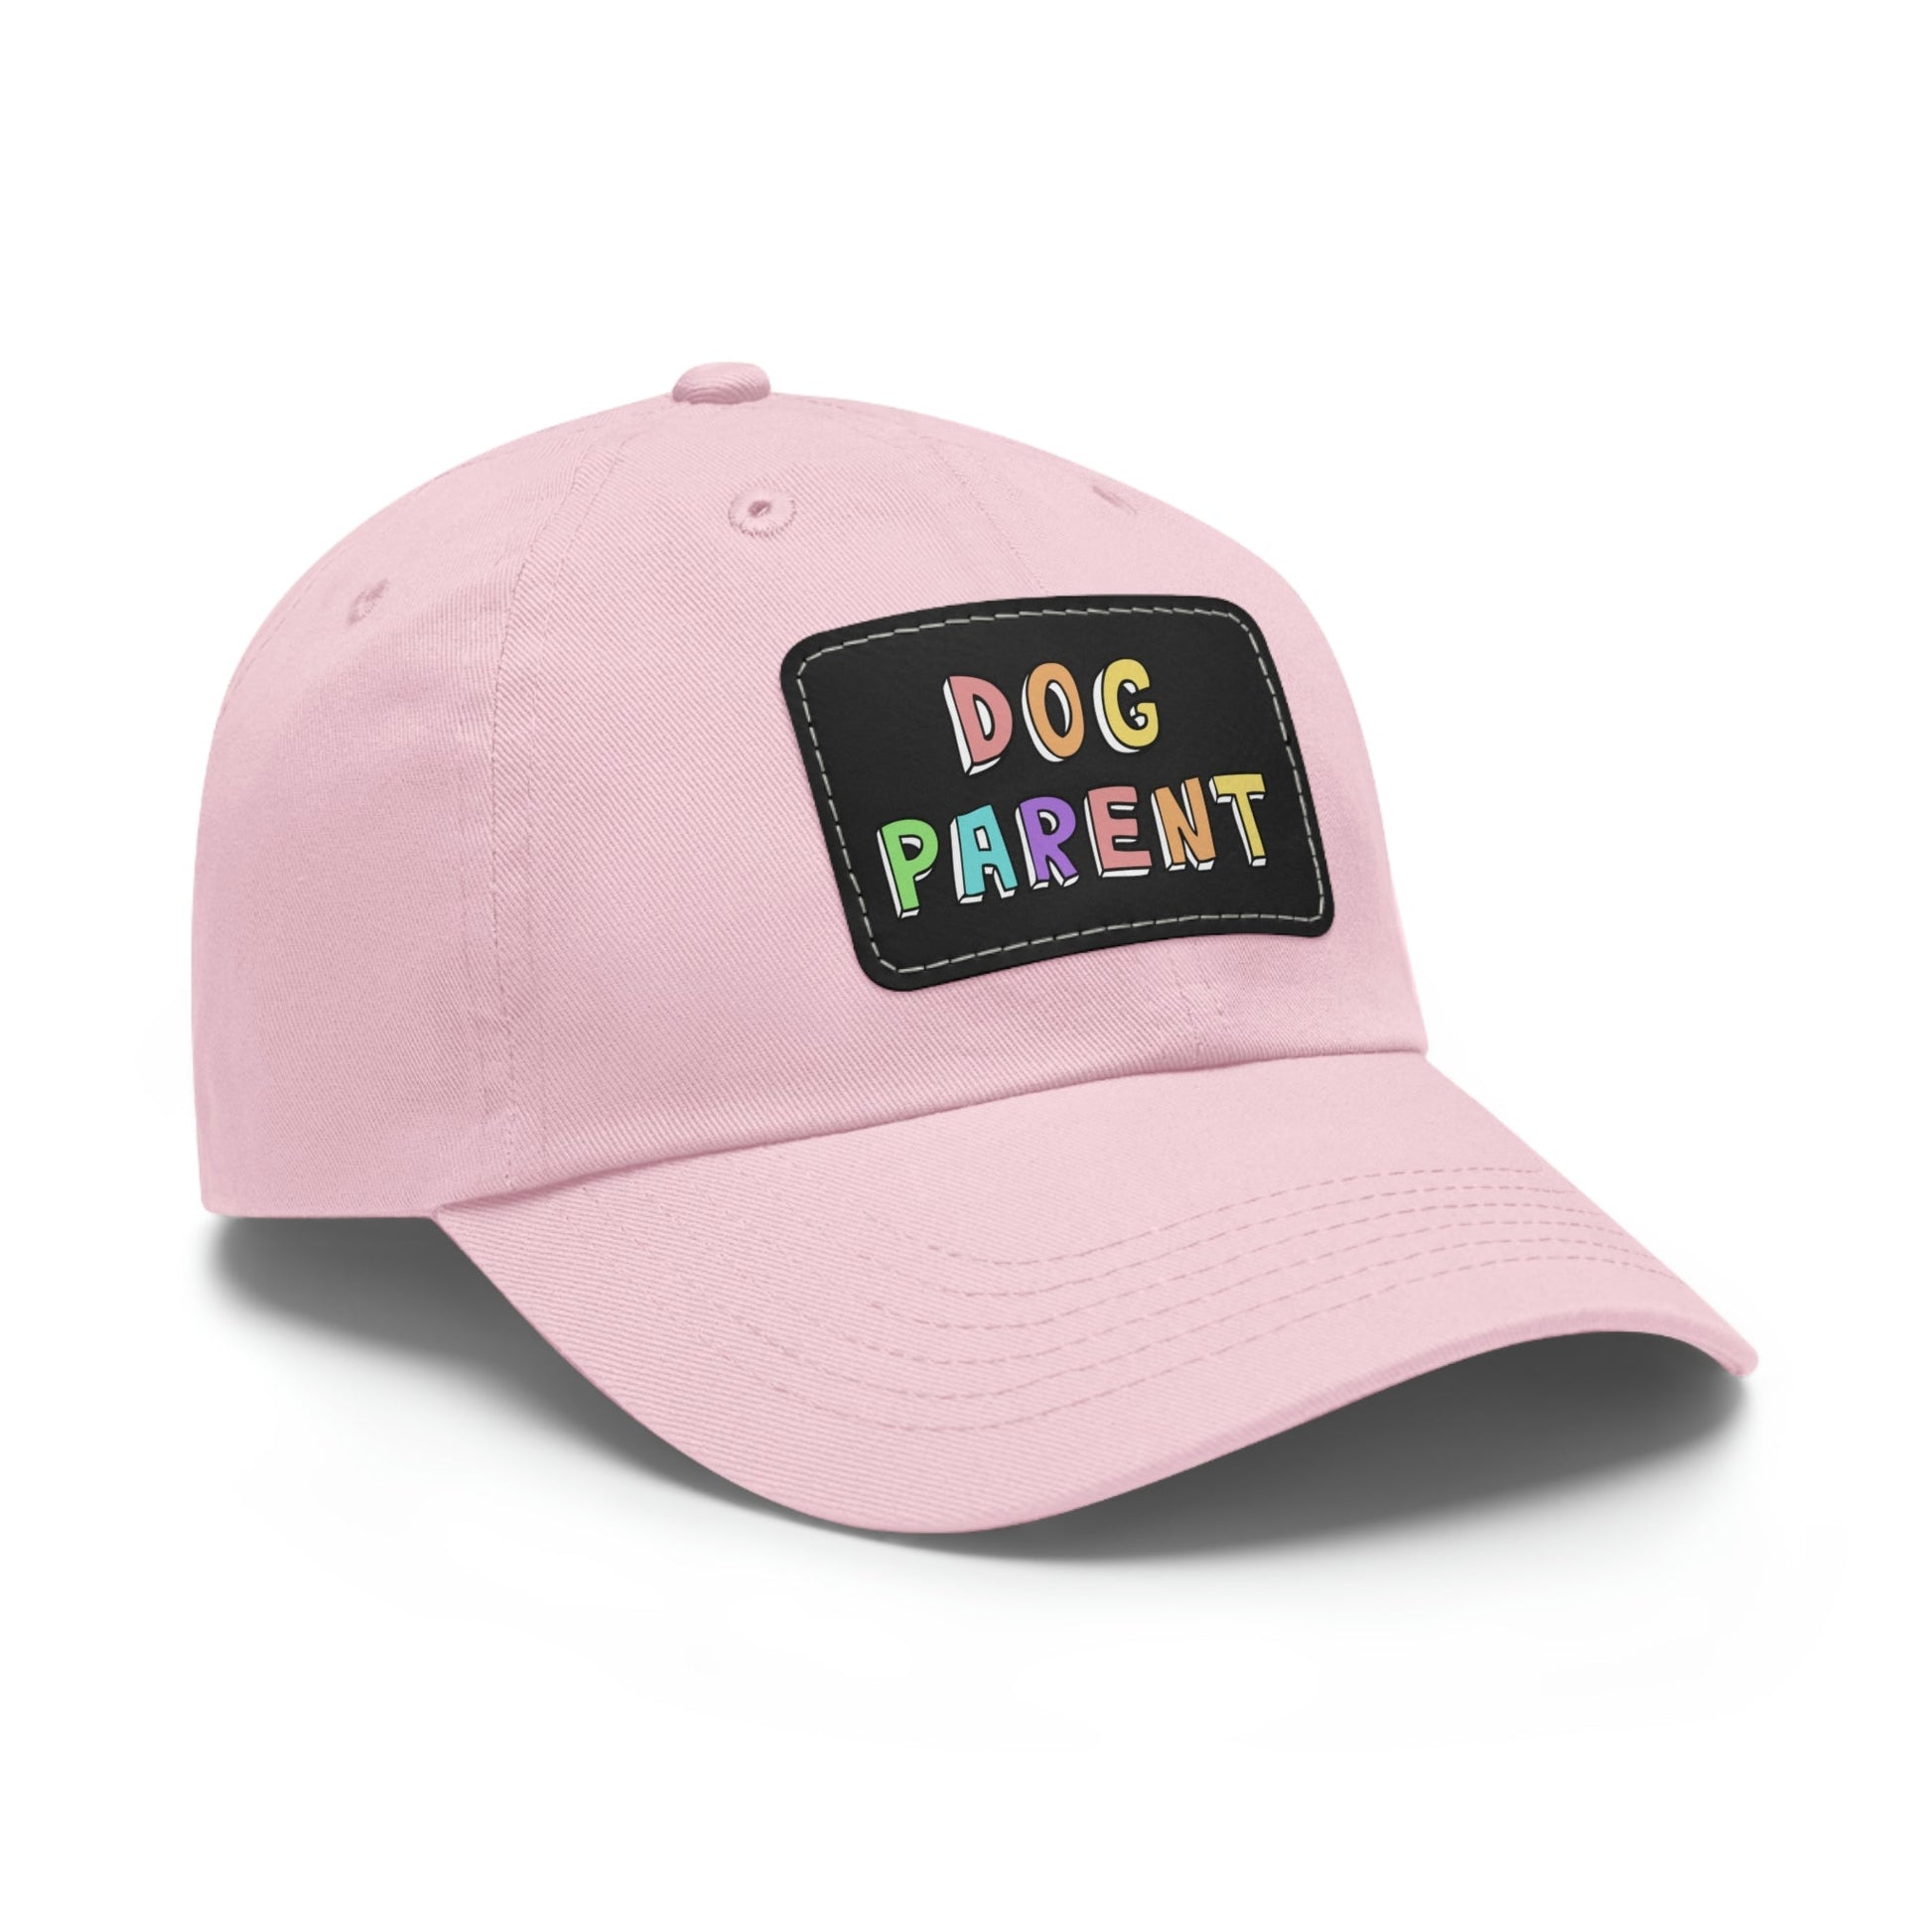 Dog Parent | Dad Hat - Detezi Designs-22986332603909547265